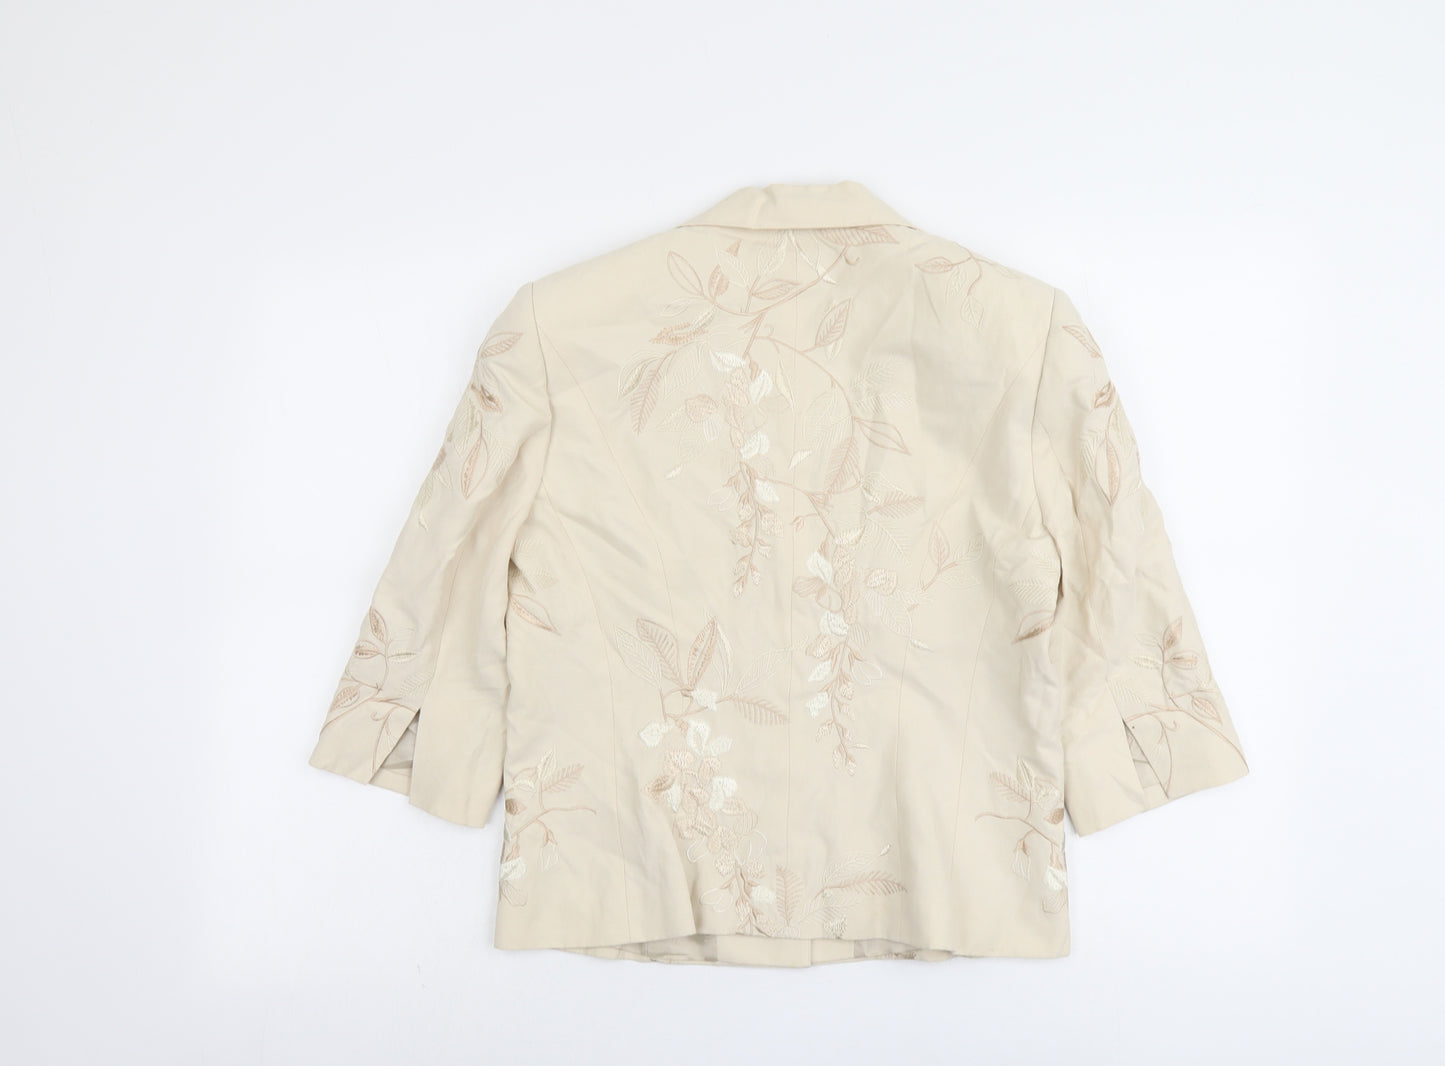 Minuet Womens Beige Floral Jacket Blazer Size 12 Button